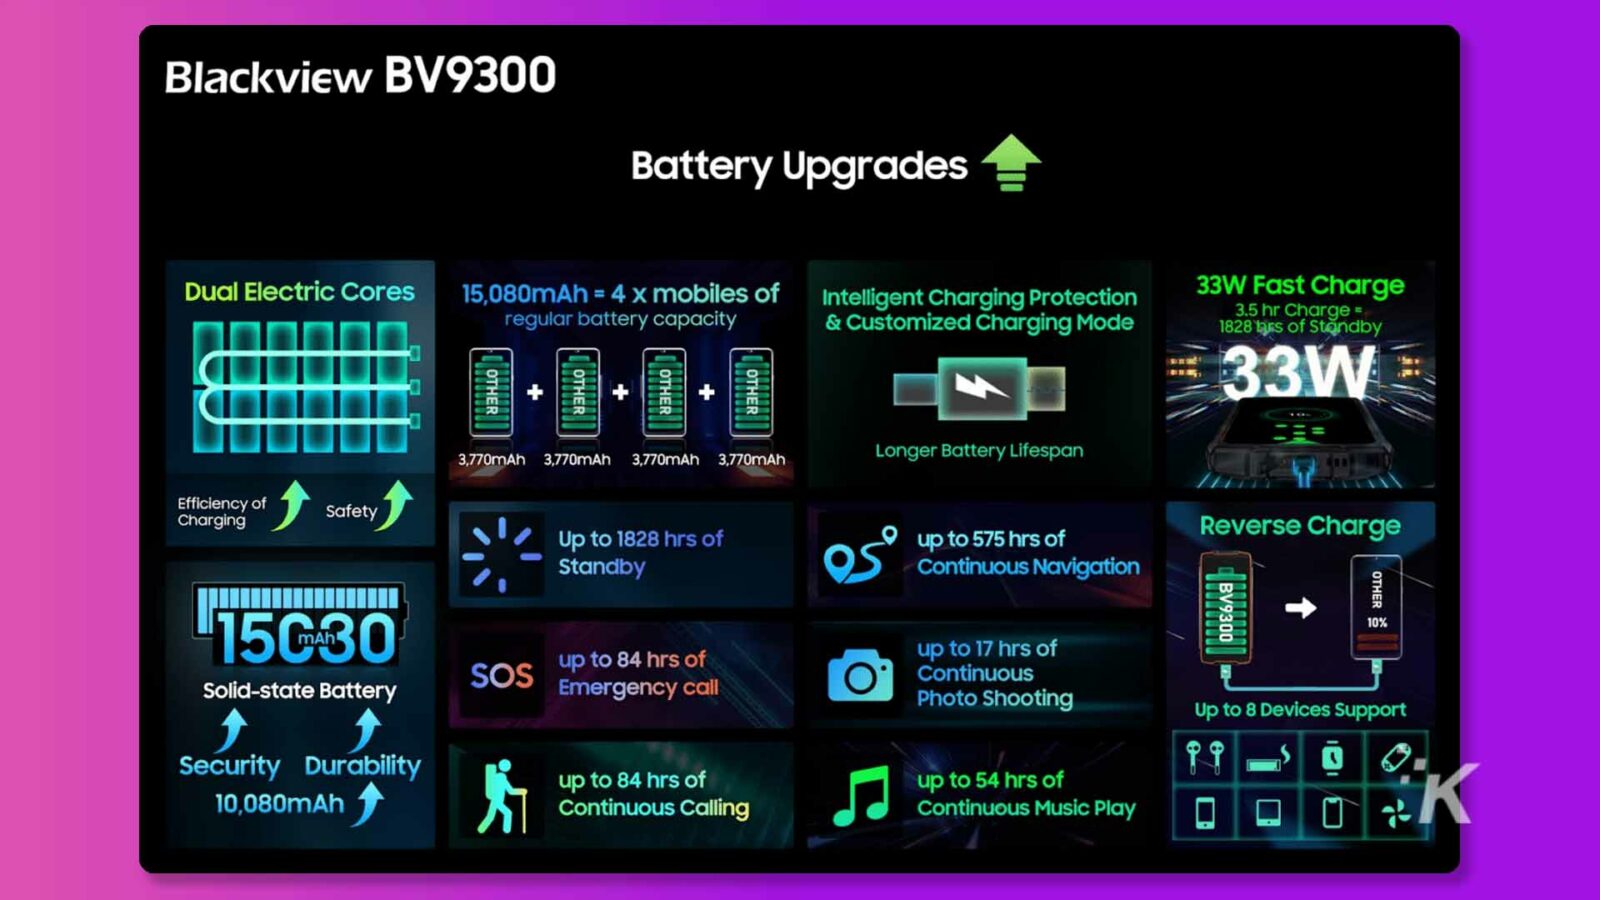 Această imagine arată caracteristicile și beneficiile bateriei Blackview BV9300, care are o capacitate de 15.080 mAh și o încărcare rapidă de 33 W cu un mod de încărcare personalizat, oferind o viață mai lungă a bateriei, o încărcare eficientă și până la 1828 de ore de așteptare. Text complet: Actualizări ale bateriei Blackview BV9300 nuclee electrice duble 15.080mAh = 4 x telefoane mobile cu protecție la încărcare inteligentă 33W Capacitate obișnuită a bateriei de încărcare rapidă și modul de încărcare personalizat 3,5 ore Încărcare = 1828 de capete Standby 33W ALTE ALTE ALTE ALTE + + + MA 3,770mAh 3 mAh 3.770mAh 3.770mAh Durată de viață mai lungă a bateriei Eficiența încărcării Siguranță Până la 1828 ore, până la 575 ore de încărcare inversă Standby Navigație continuă ALTE BV9300 15G30 până la 84 ore Baterie cu stare solidă SOS până la 17 ore Apel de urgență continuu Fotografierea a până la 8 dispozitive acceptă securitatea durabilitate 10.080 mAh până la 84 de ore de până la 54 de ore de apelare continuă Redare continuă de muzică